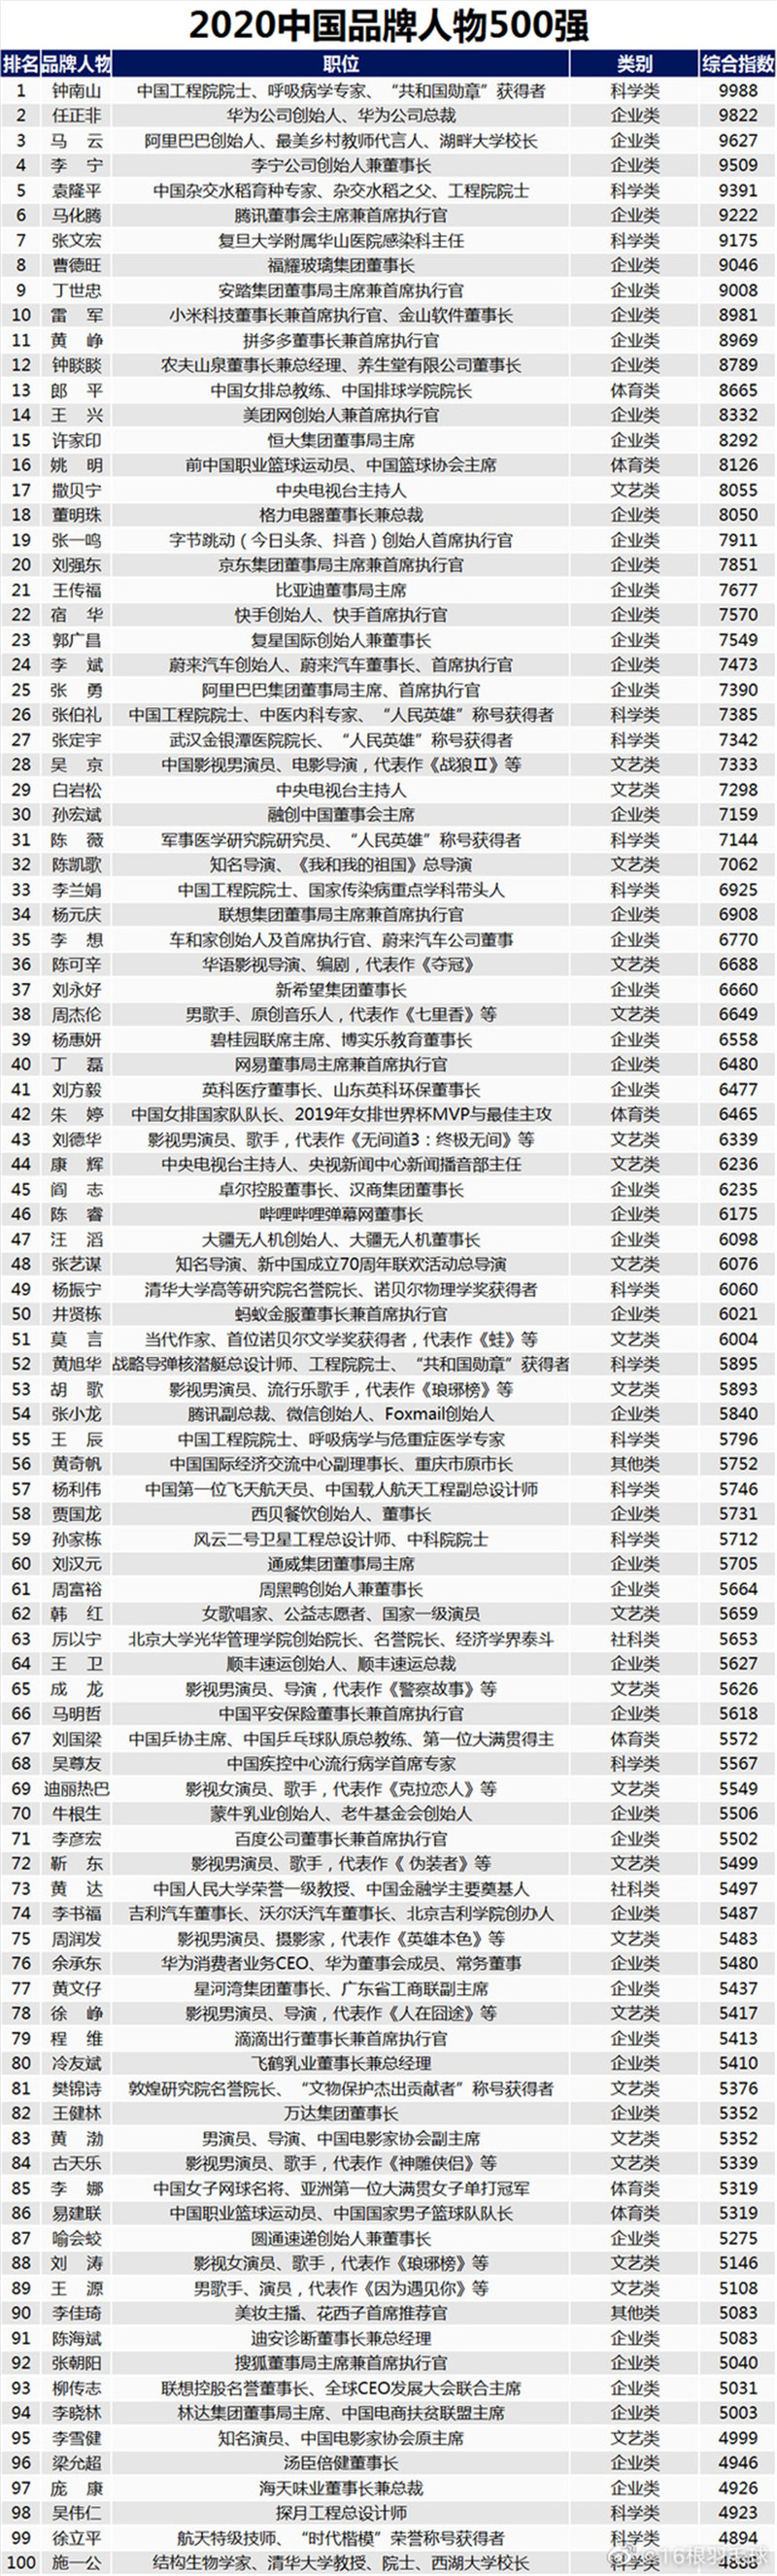 郎平入选2020年中国人物500强体育类首位　乒球上榜人数最多